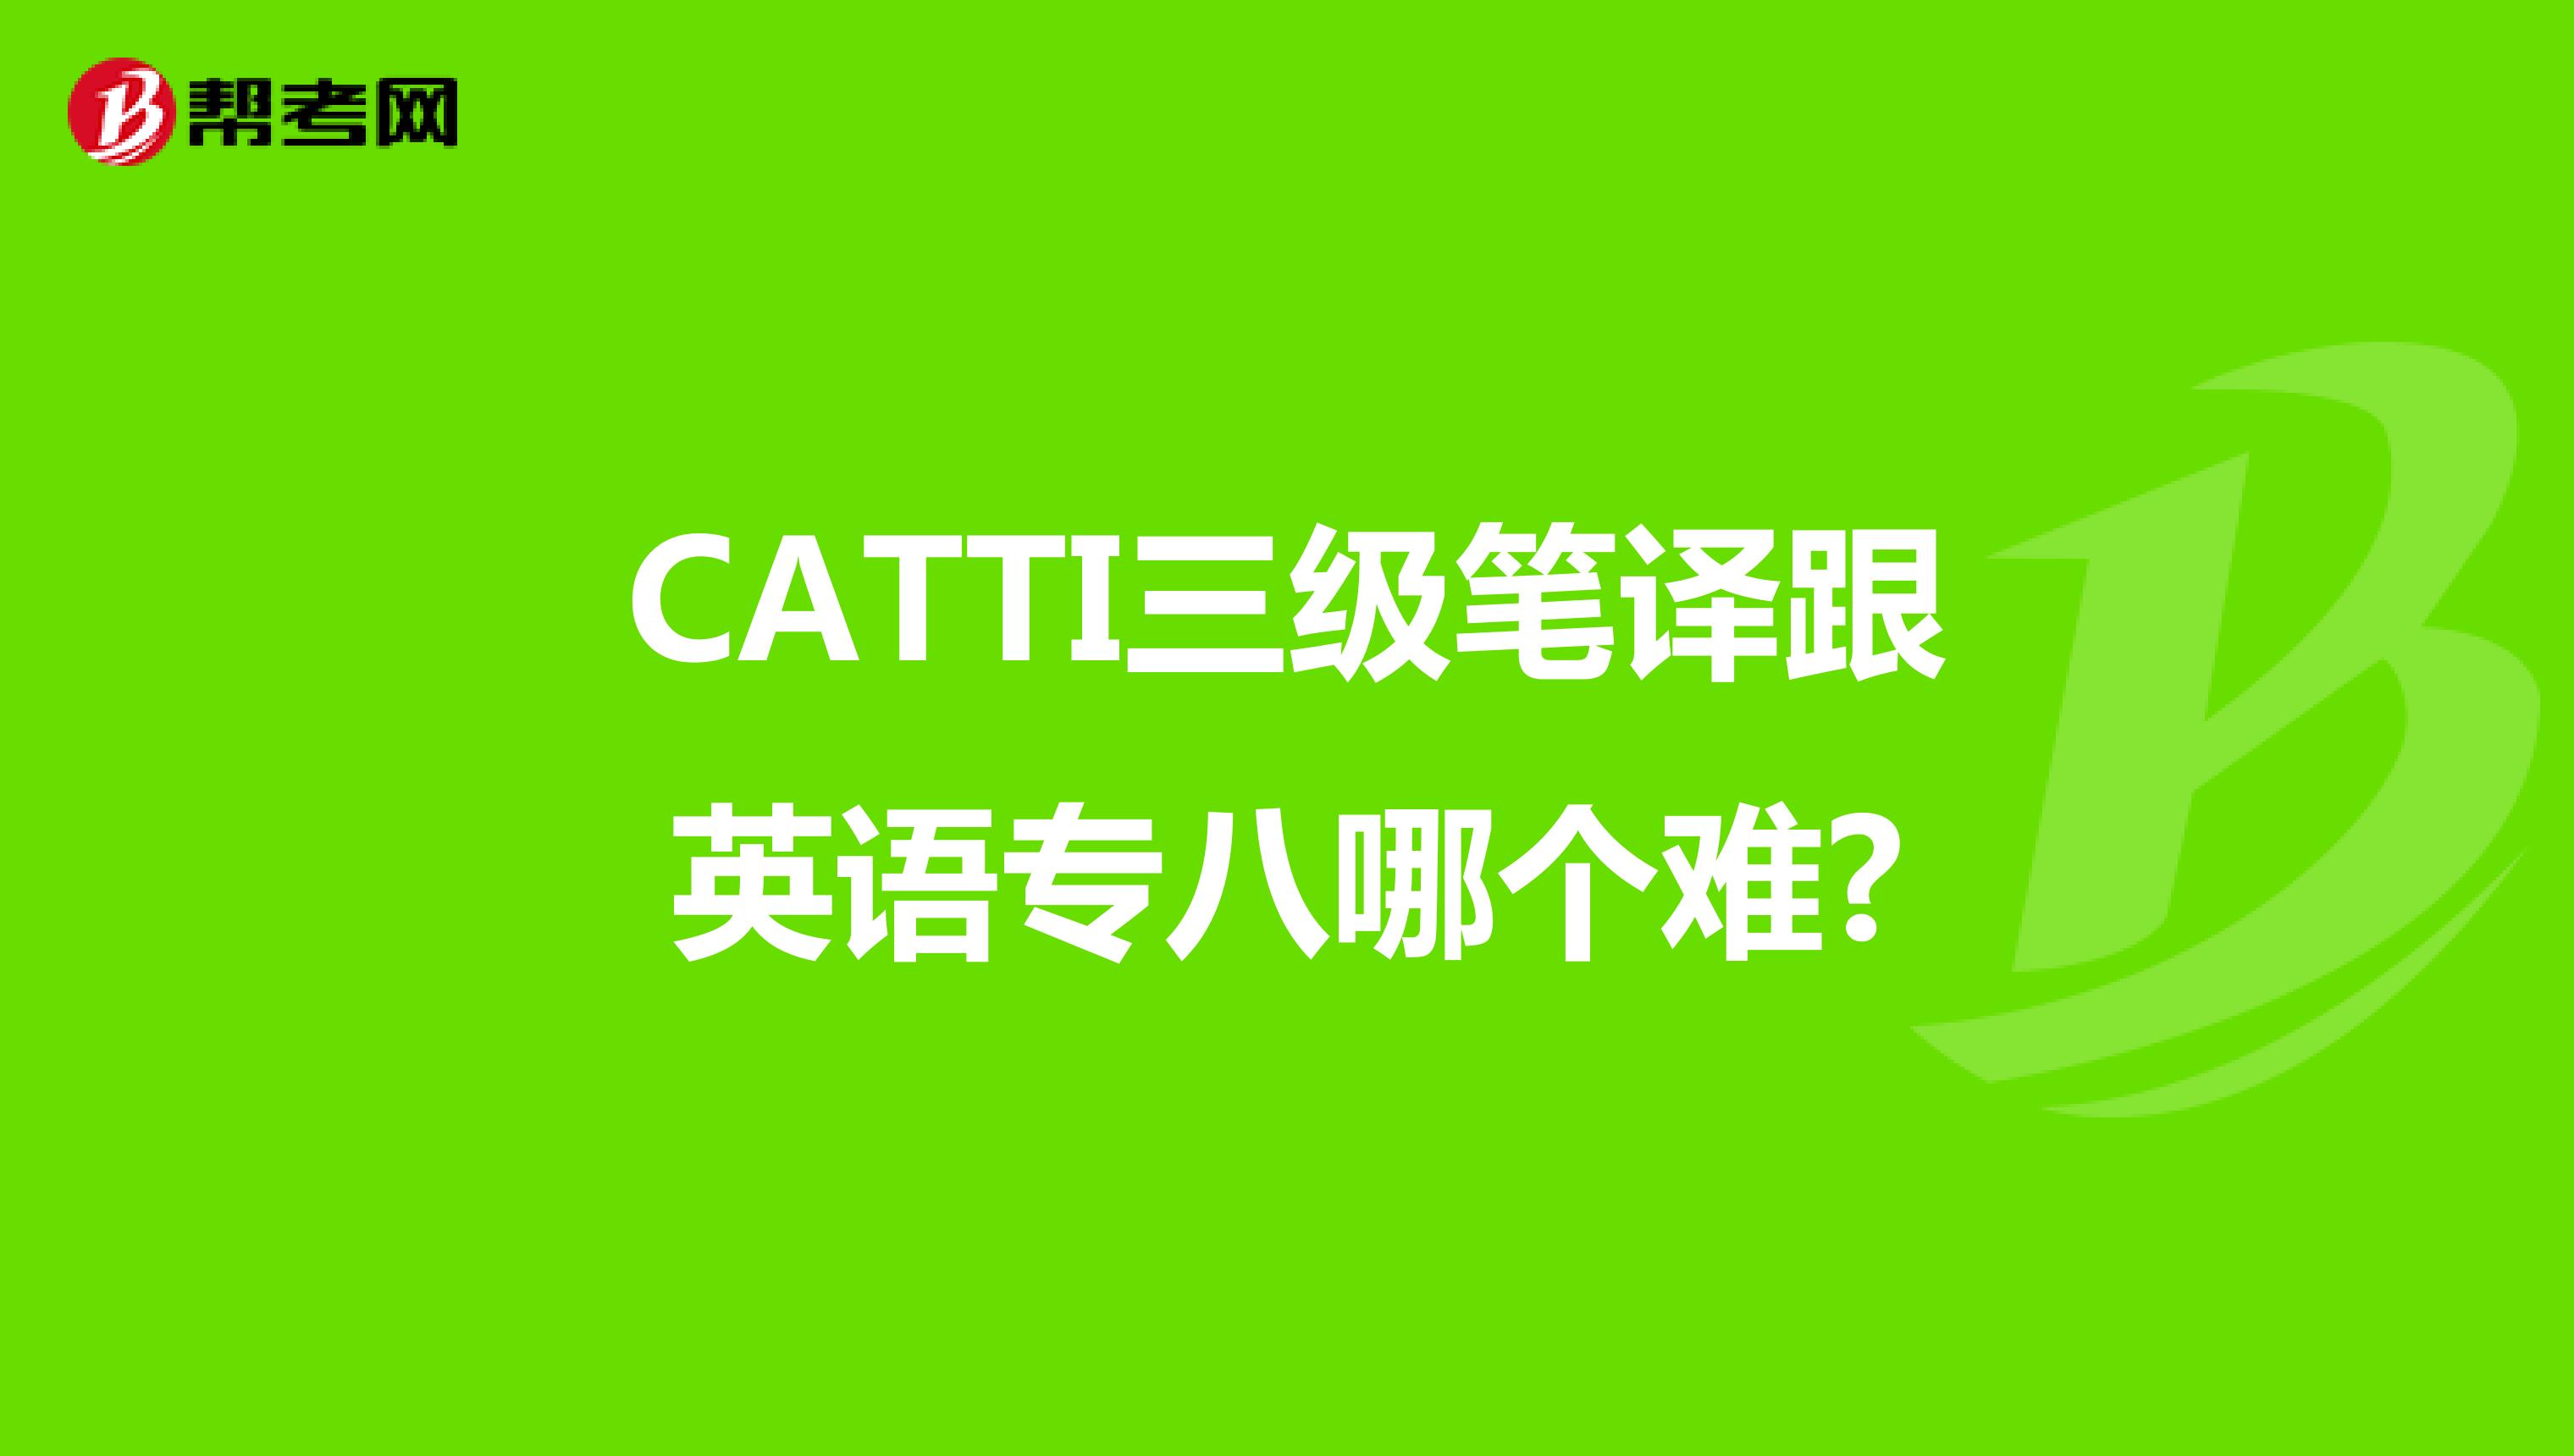 CATTI三级笔译跟英语专八哪个难?